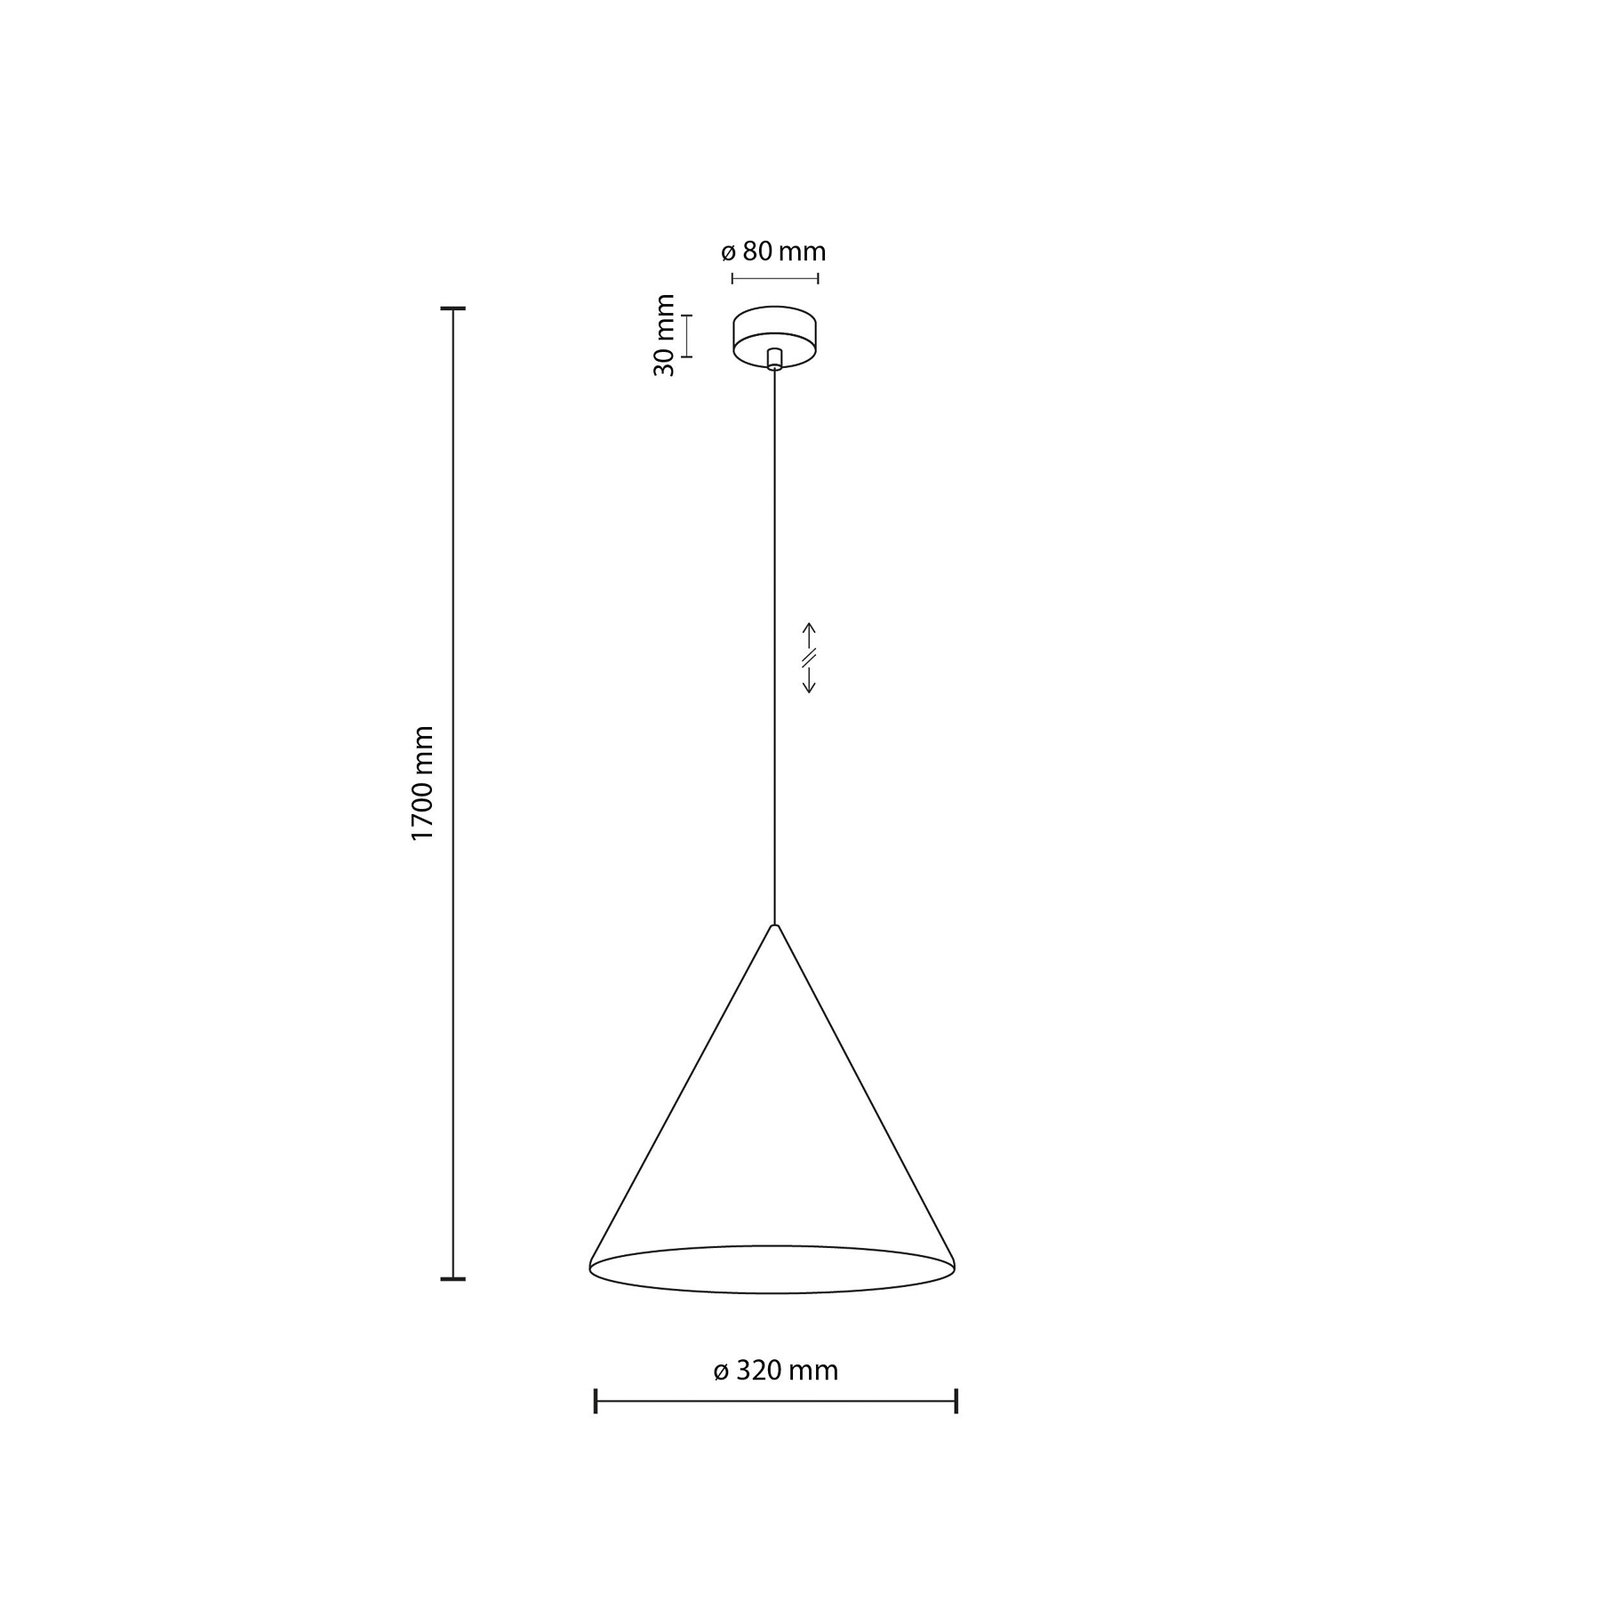 CONO hanglamp, 1-lamp, Ø 32 cm, oranje